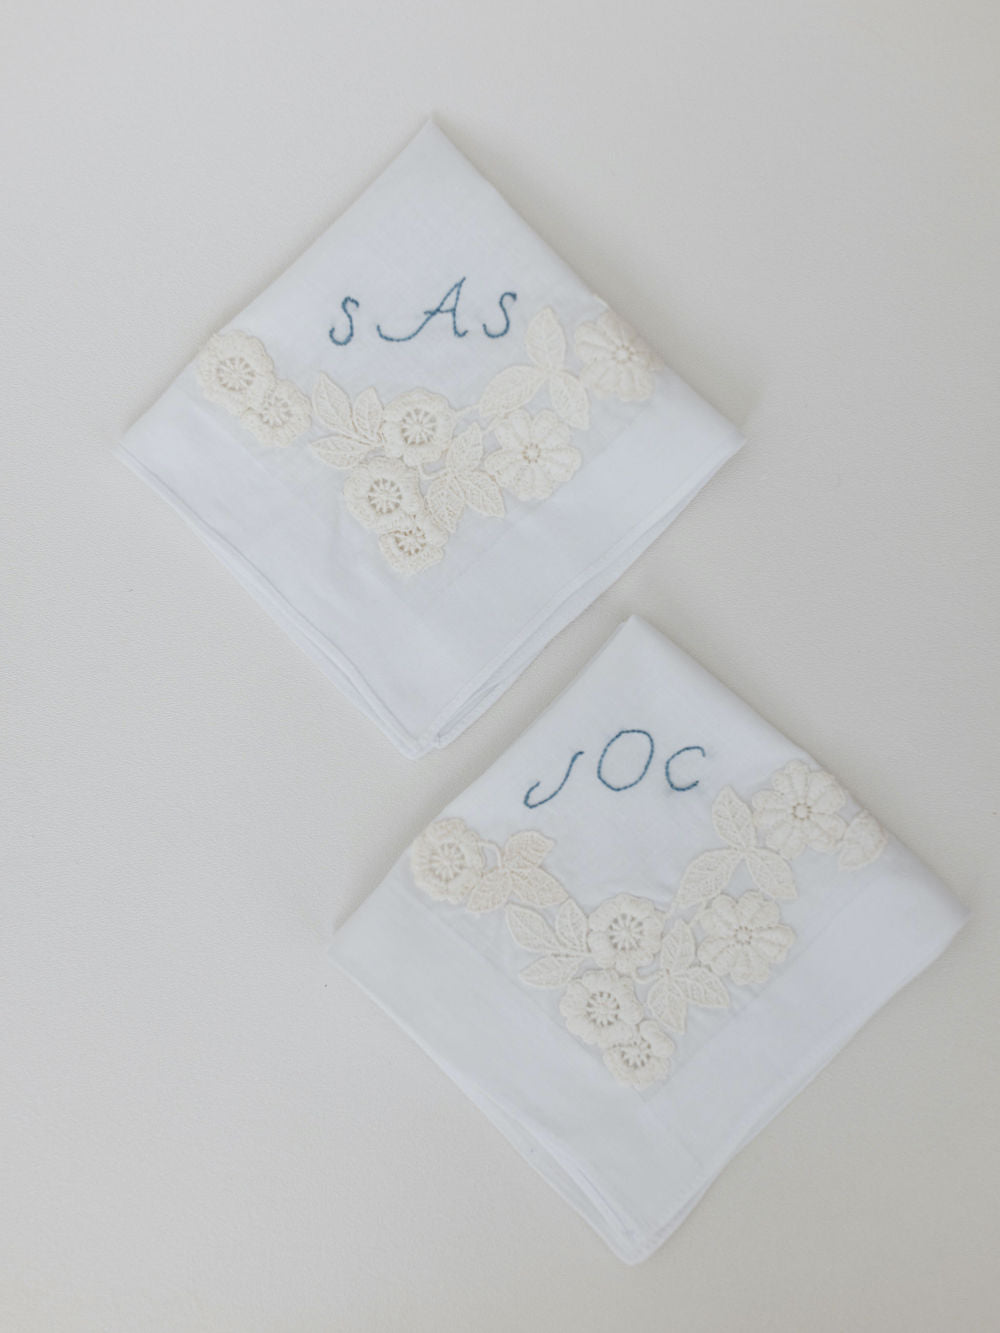 wedding garter & handkerchiefs handmade from grandmother's wedding dress lace by expert heirloom designer, The Garter Girl